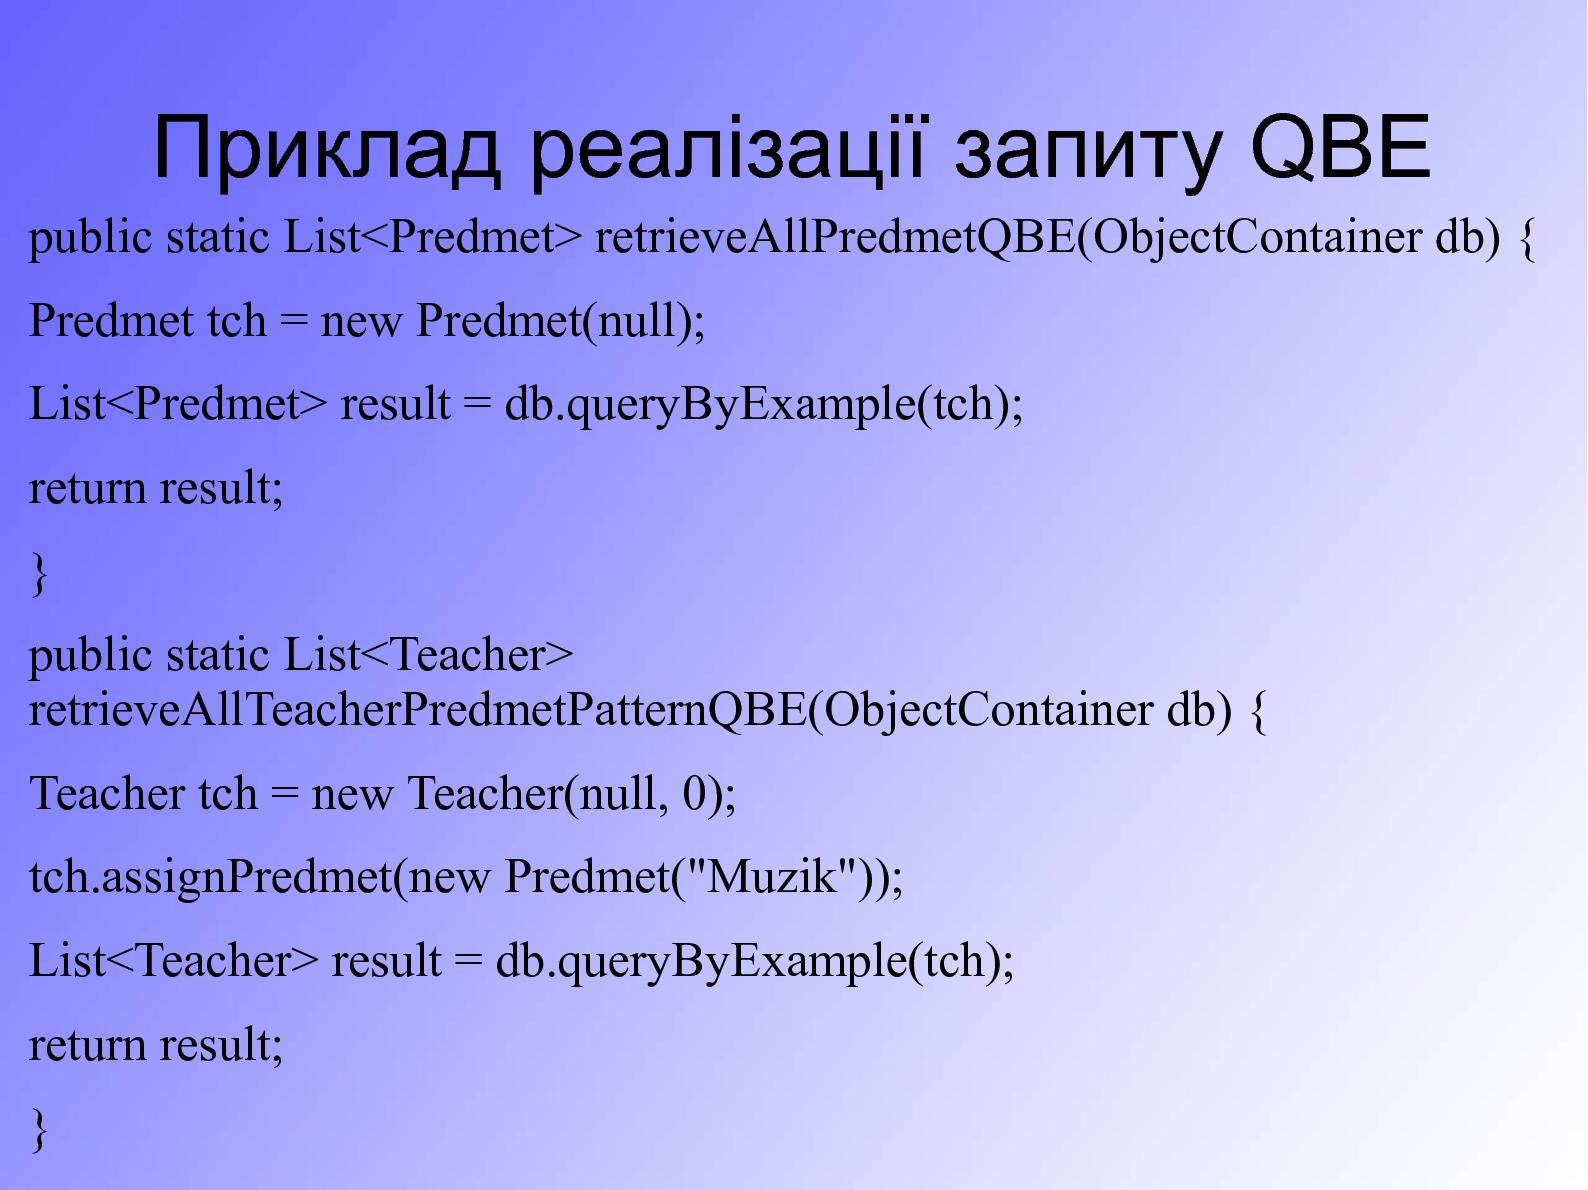 Файл:Особливості використання запитів в об’єктній СУБД db4o, їх порівняння з запитами SQL (Сергей Компан, OSDN-UA-2012).pdf